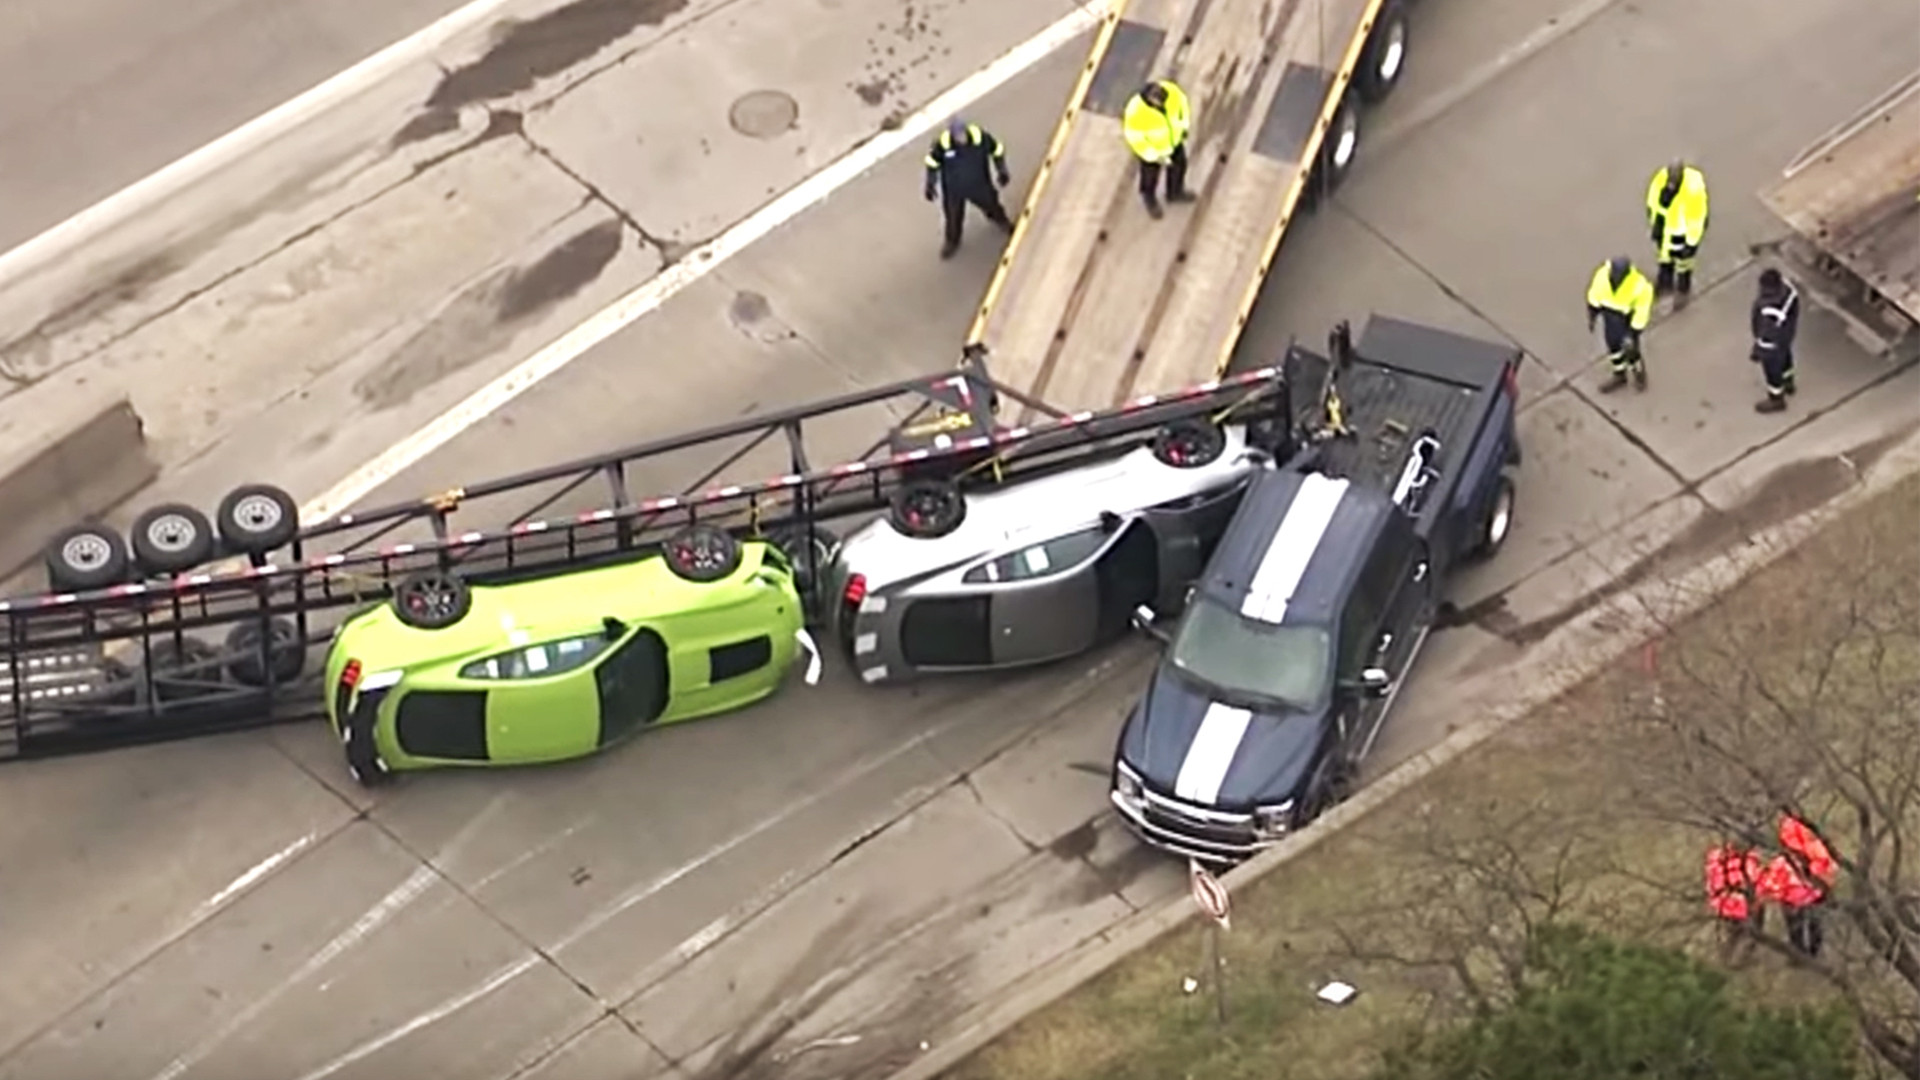 高速道路を走行していた積載車が事故 積み荷だった新車のシェルビーgt500 2台が落下し横倒しに 米国 デトロイト 事故車はんてい